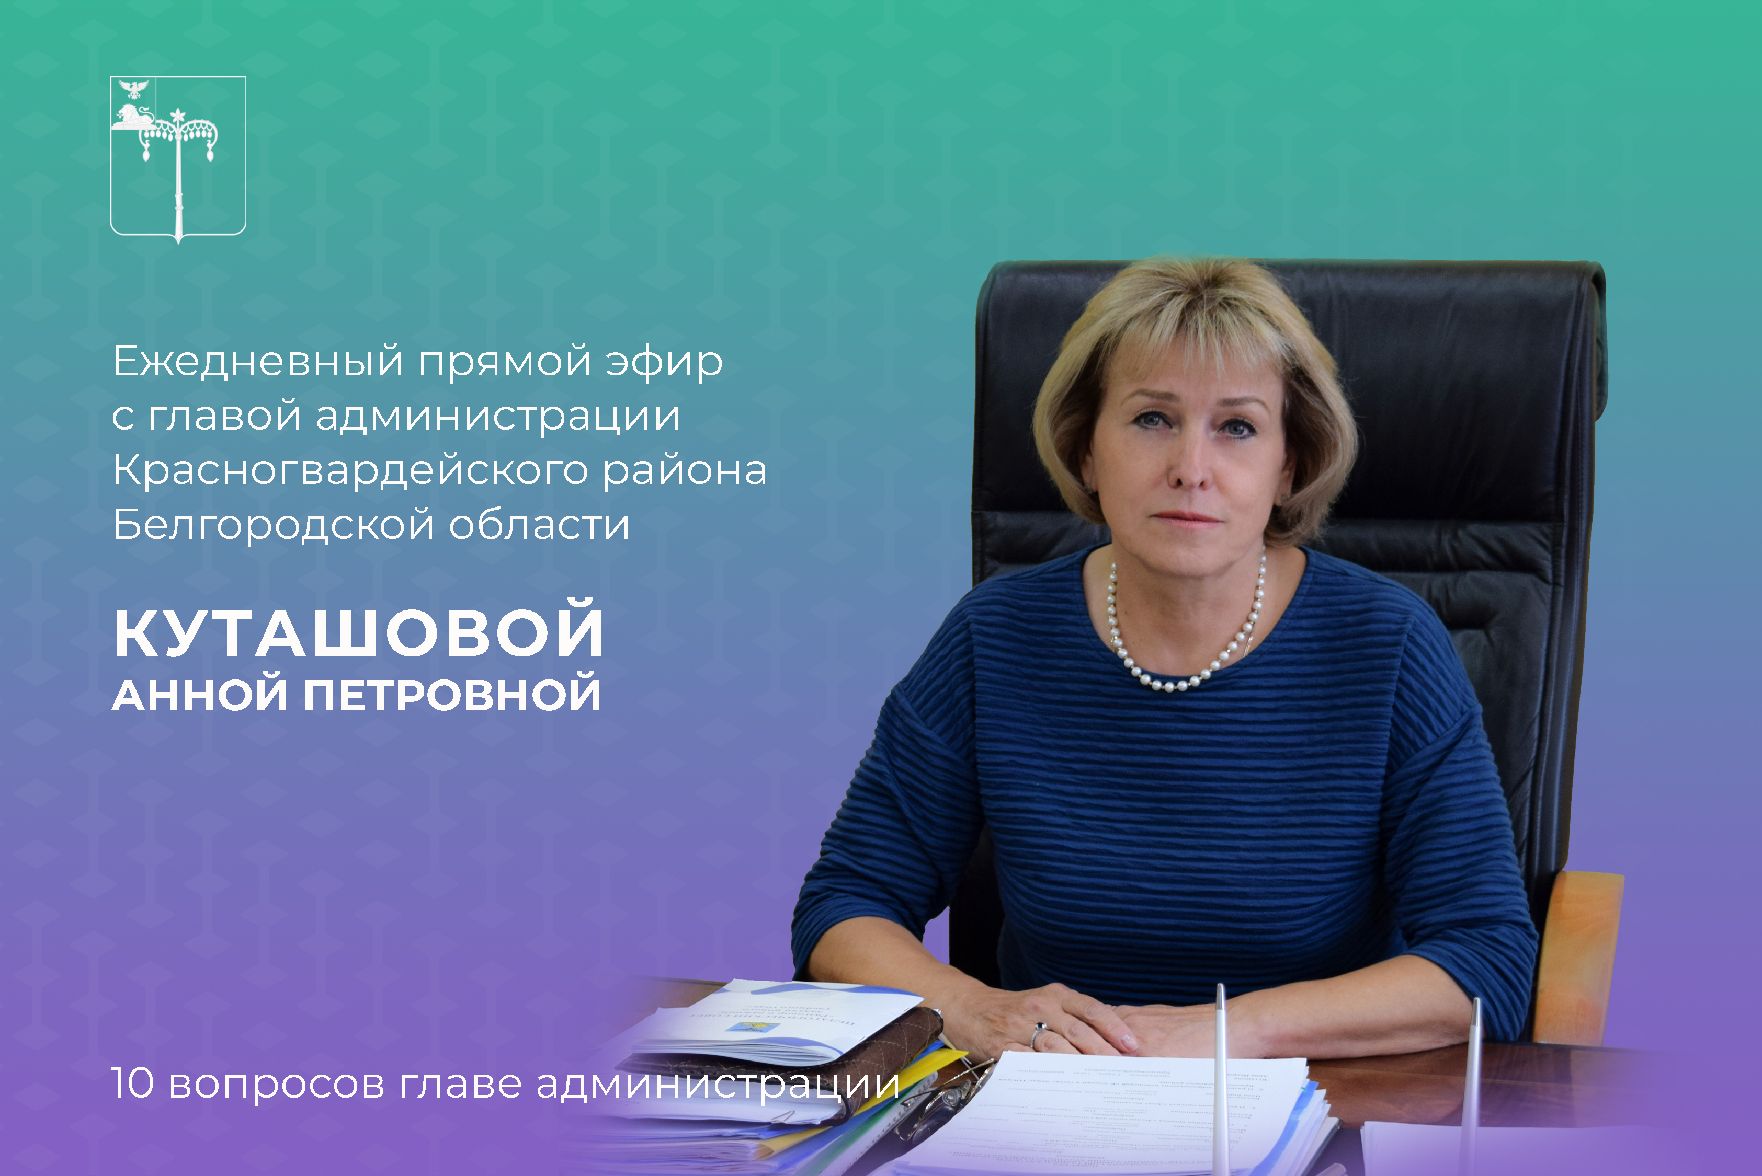 Глава администрации Красногвардейского района Анна Куташова проведёт ежедневный прямой эфир сегодня в 16:00